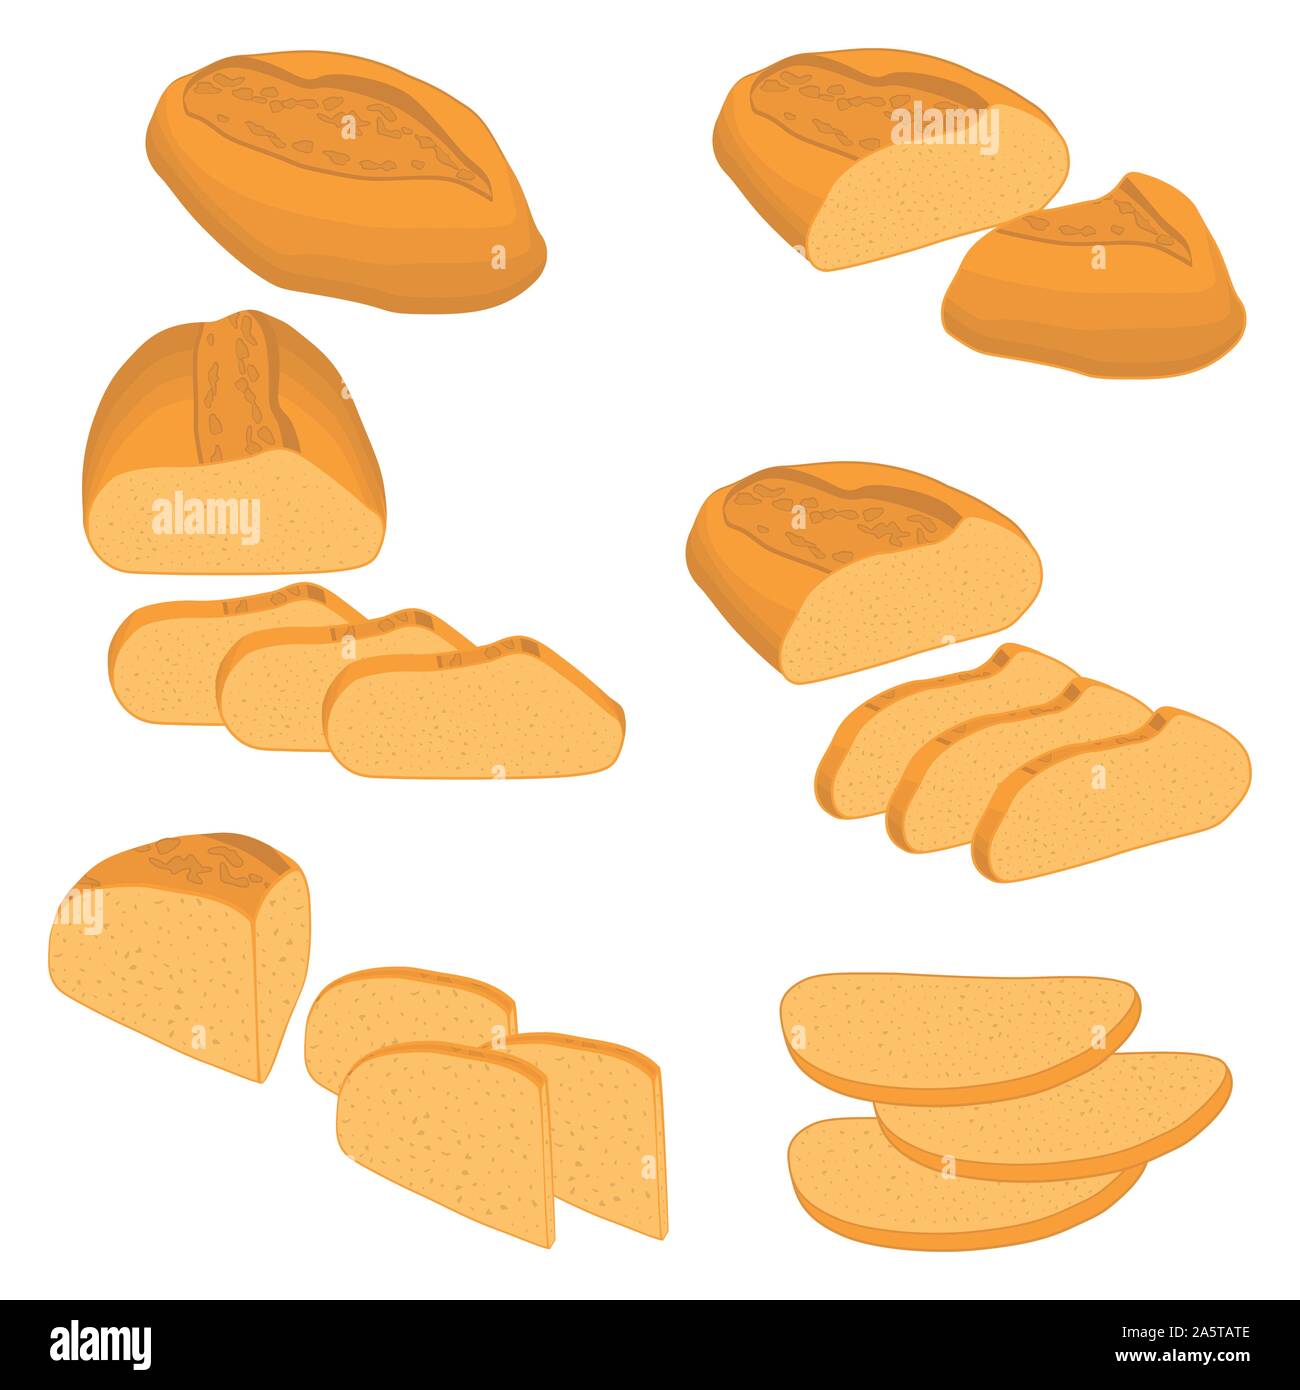 Vector Illustration der Satz von gebackenem Brot, dunkel Roggen Backstein, weiche Baguette für Backwaren. Brot aus der Bäckerei natürliche lecker Weizen essen in Scheiben geschnitten Toa Stock Vektor